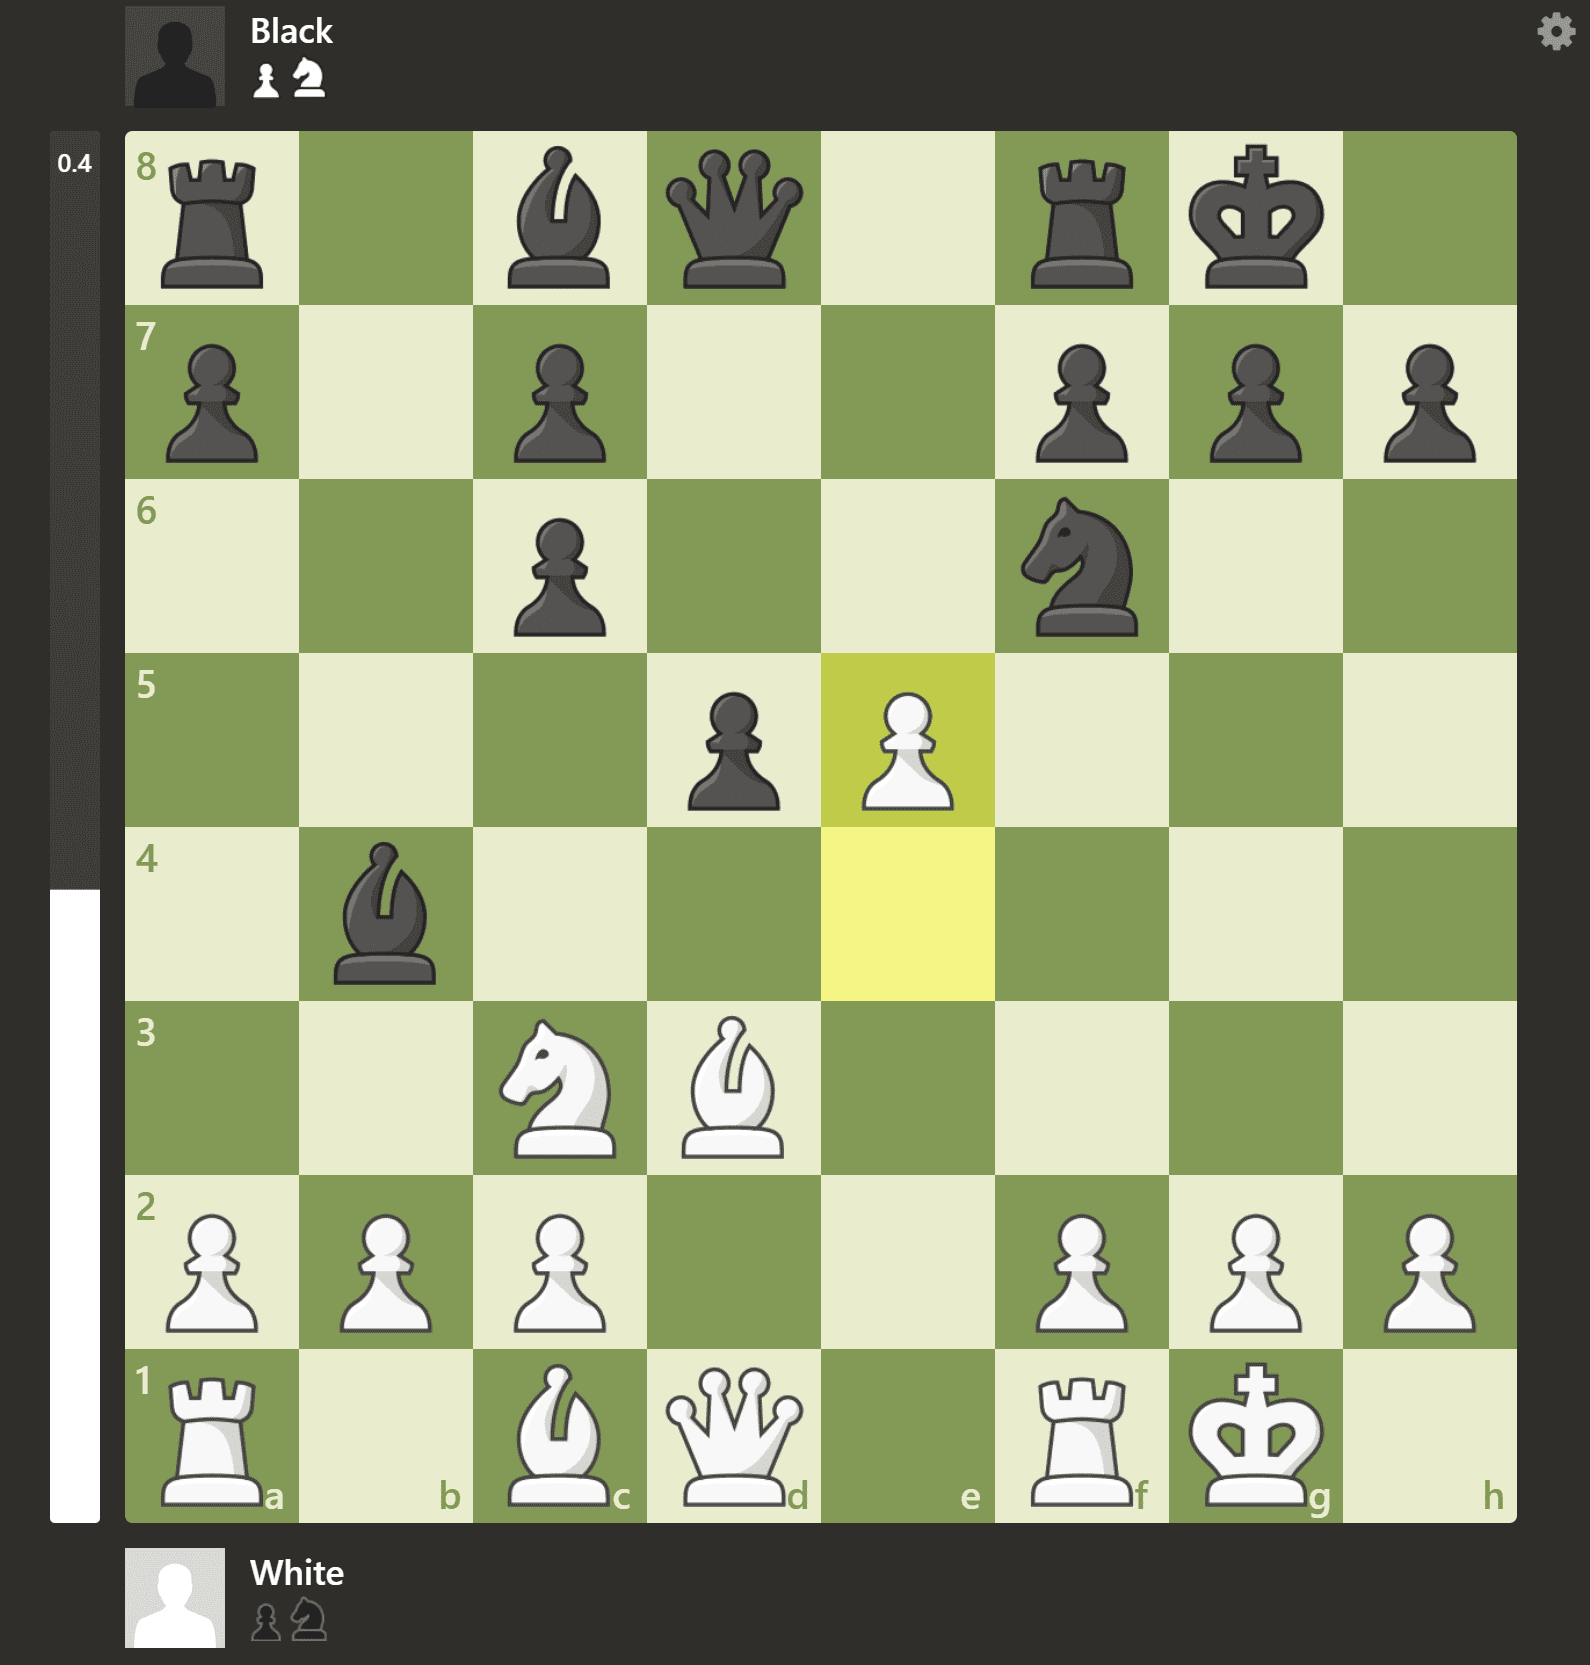 Έχει το ChatGPT τη δυνατότητα να γίνει ένας νέος σούπερ γκραν μάστερ στο σκάκι;